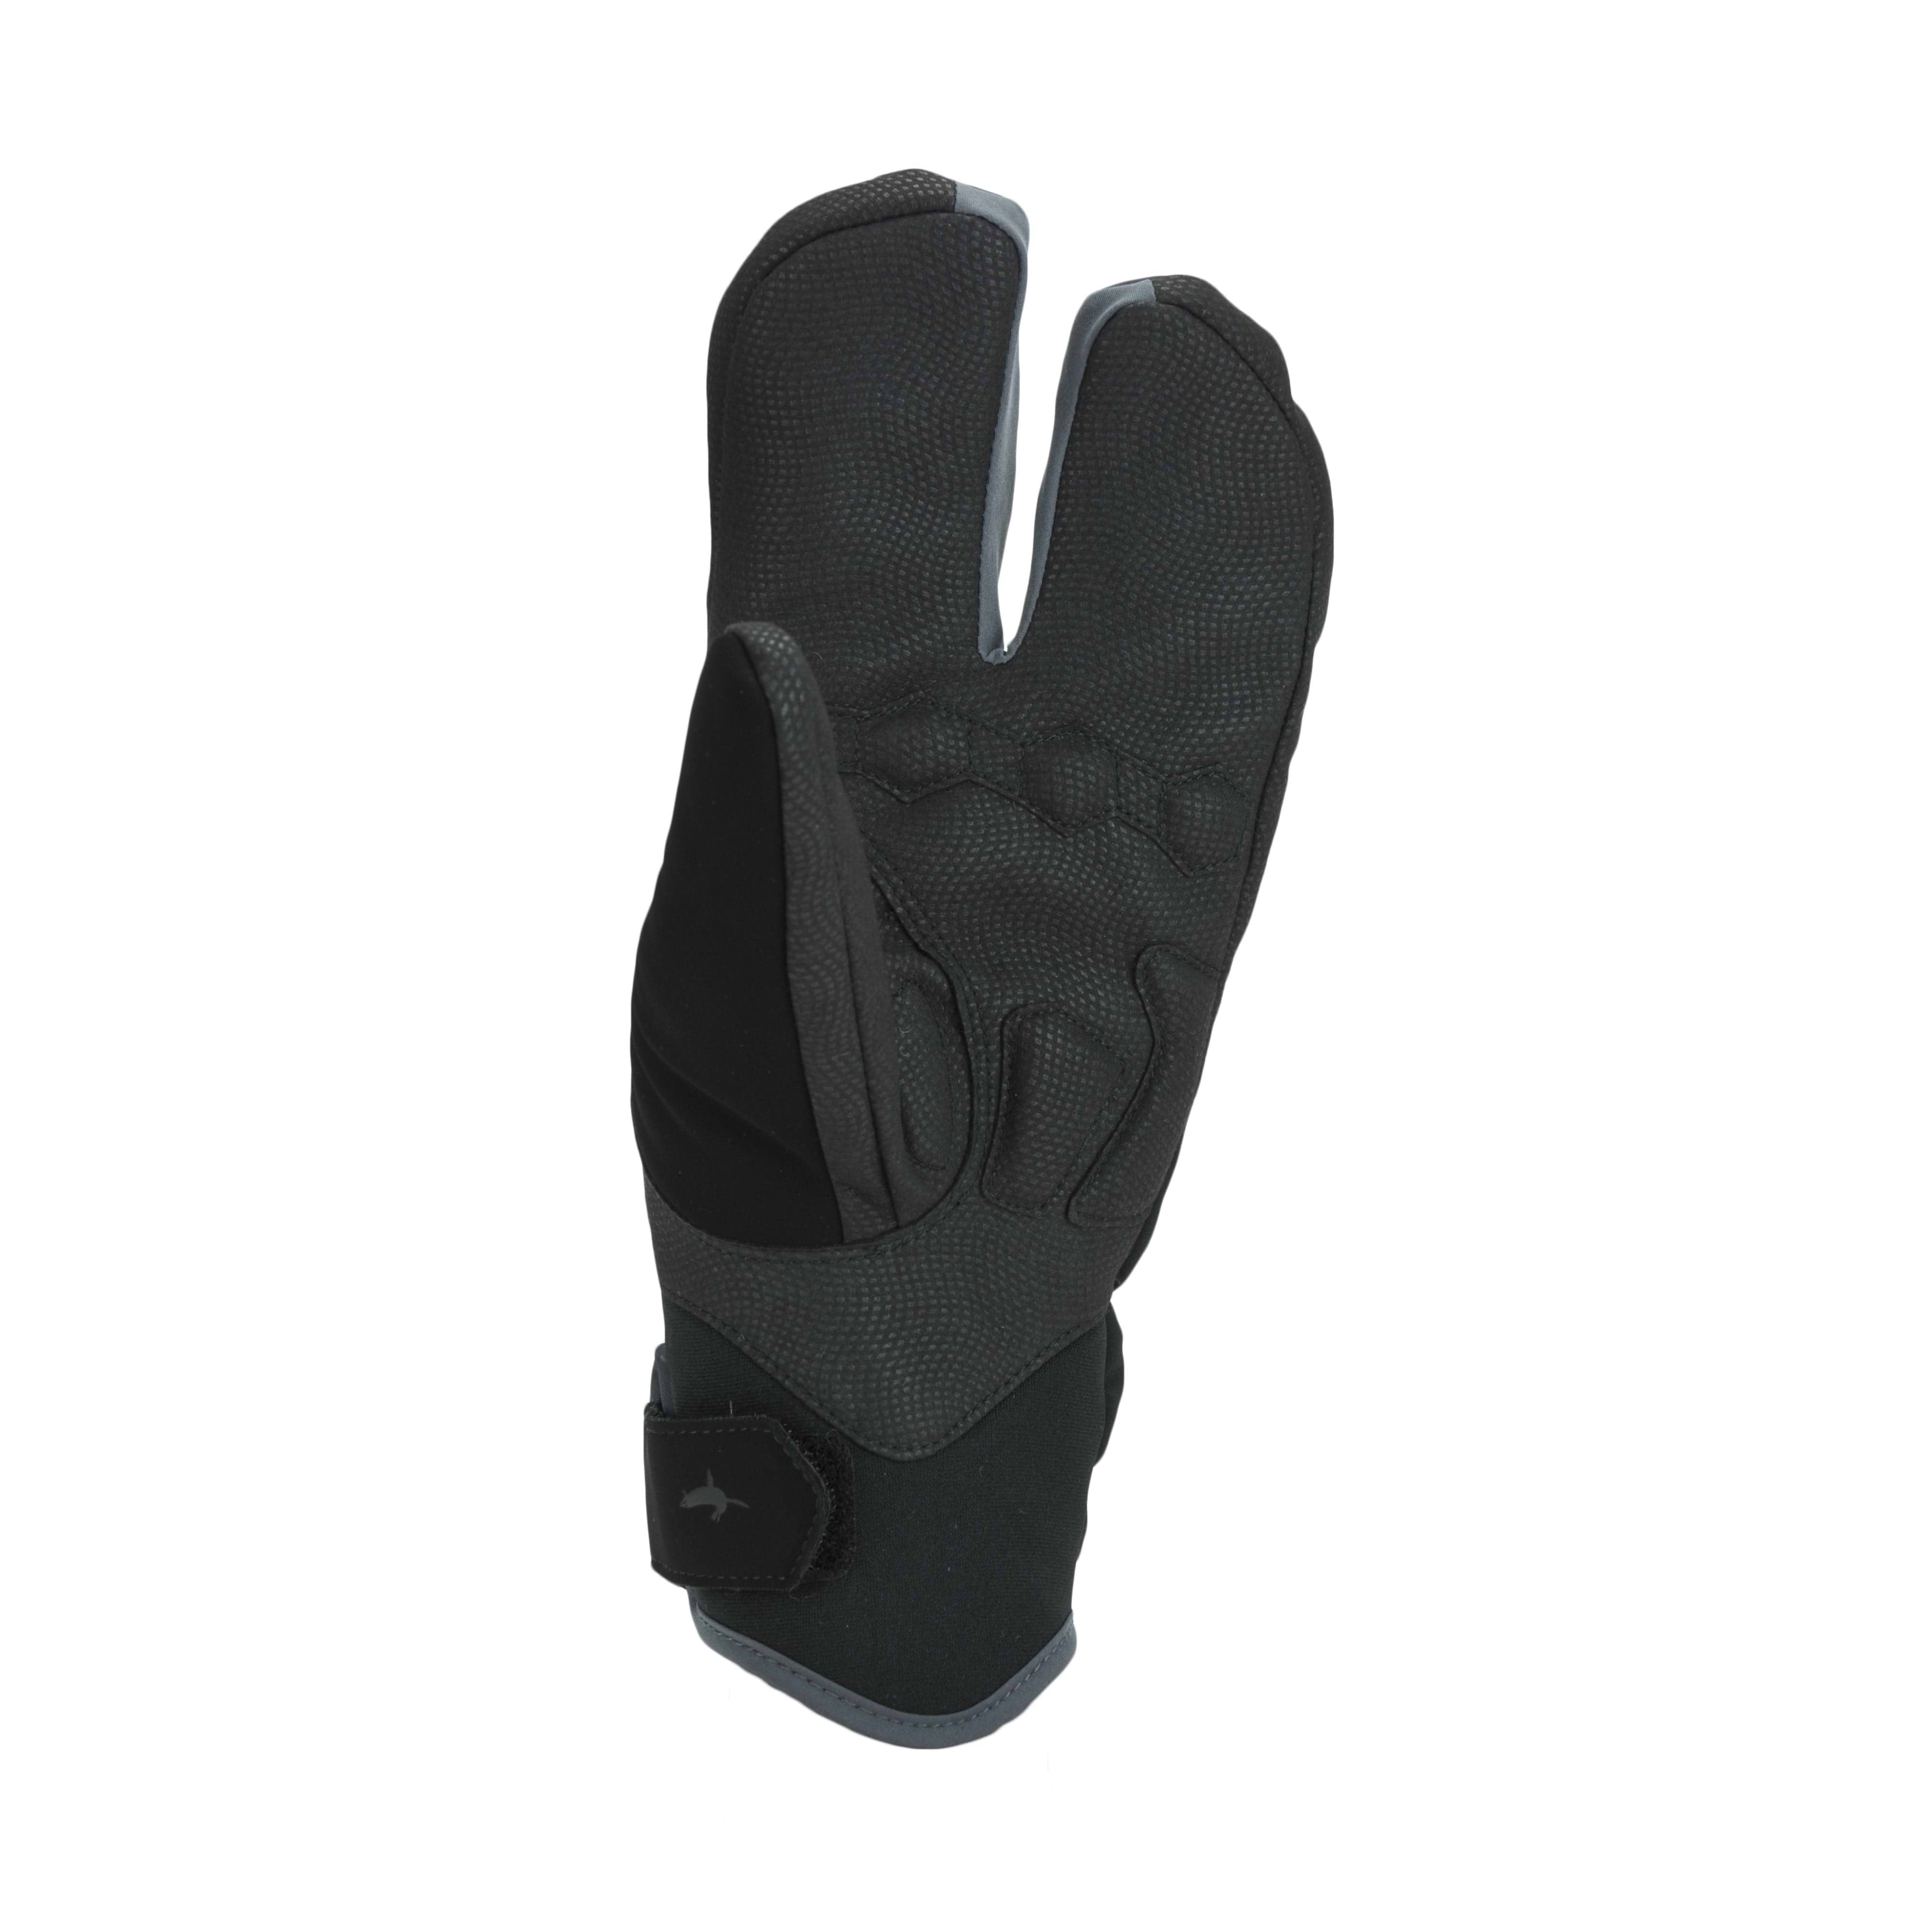 Kyncilor Fishing Gloves for Men Women Half-Finger and Sun Large